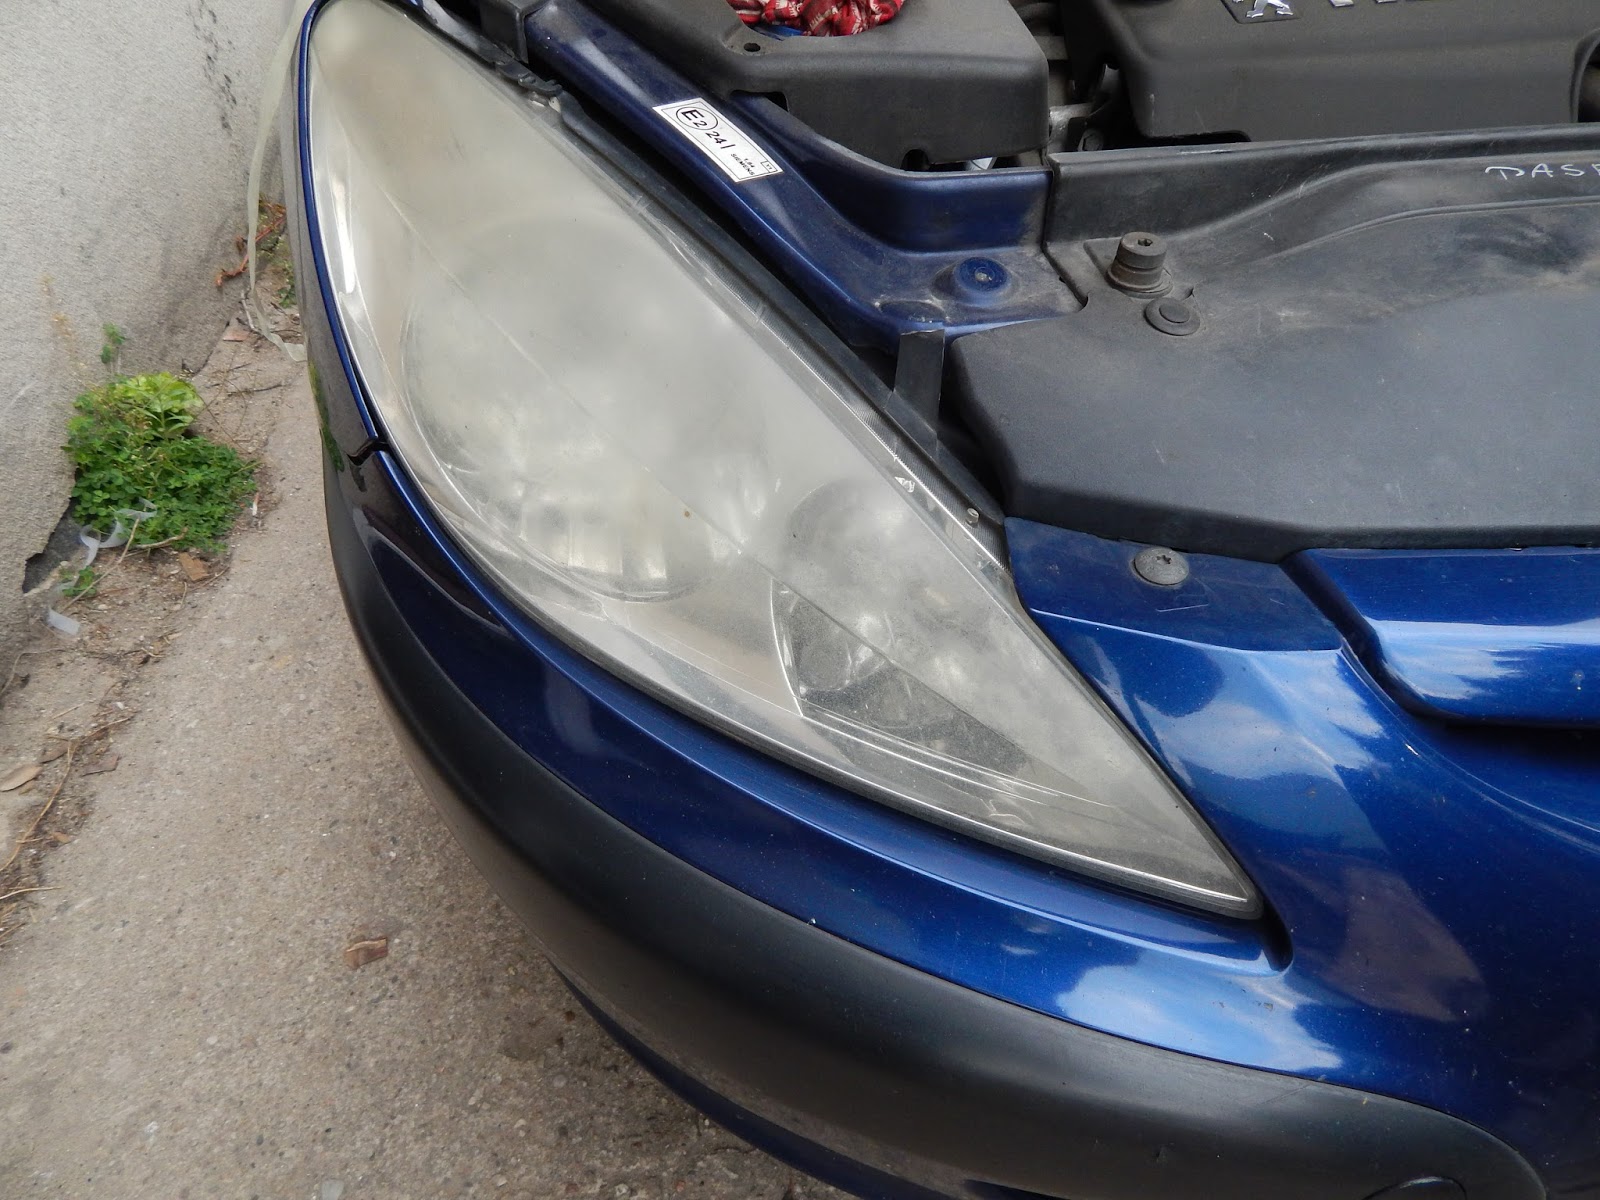 Naprawa świateł samochodowych polerowanie lamp Peugeot 307